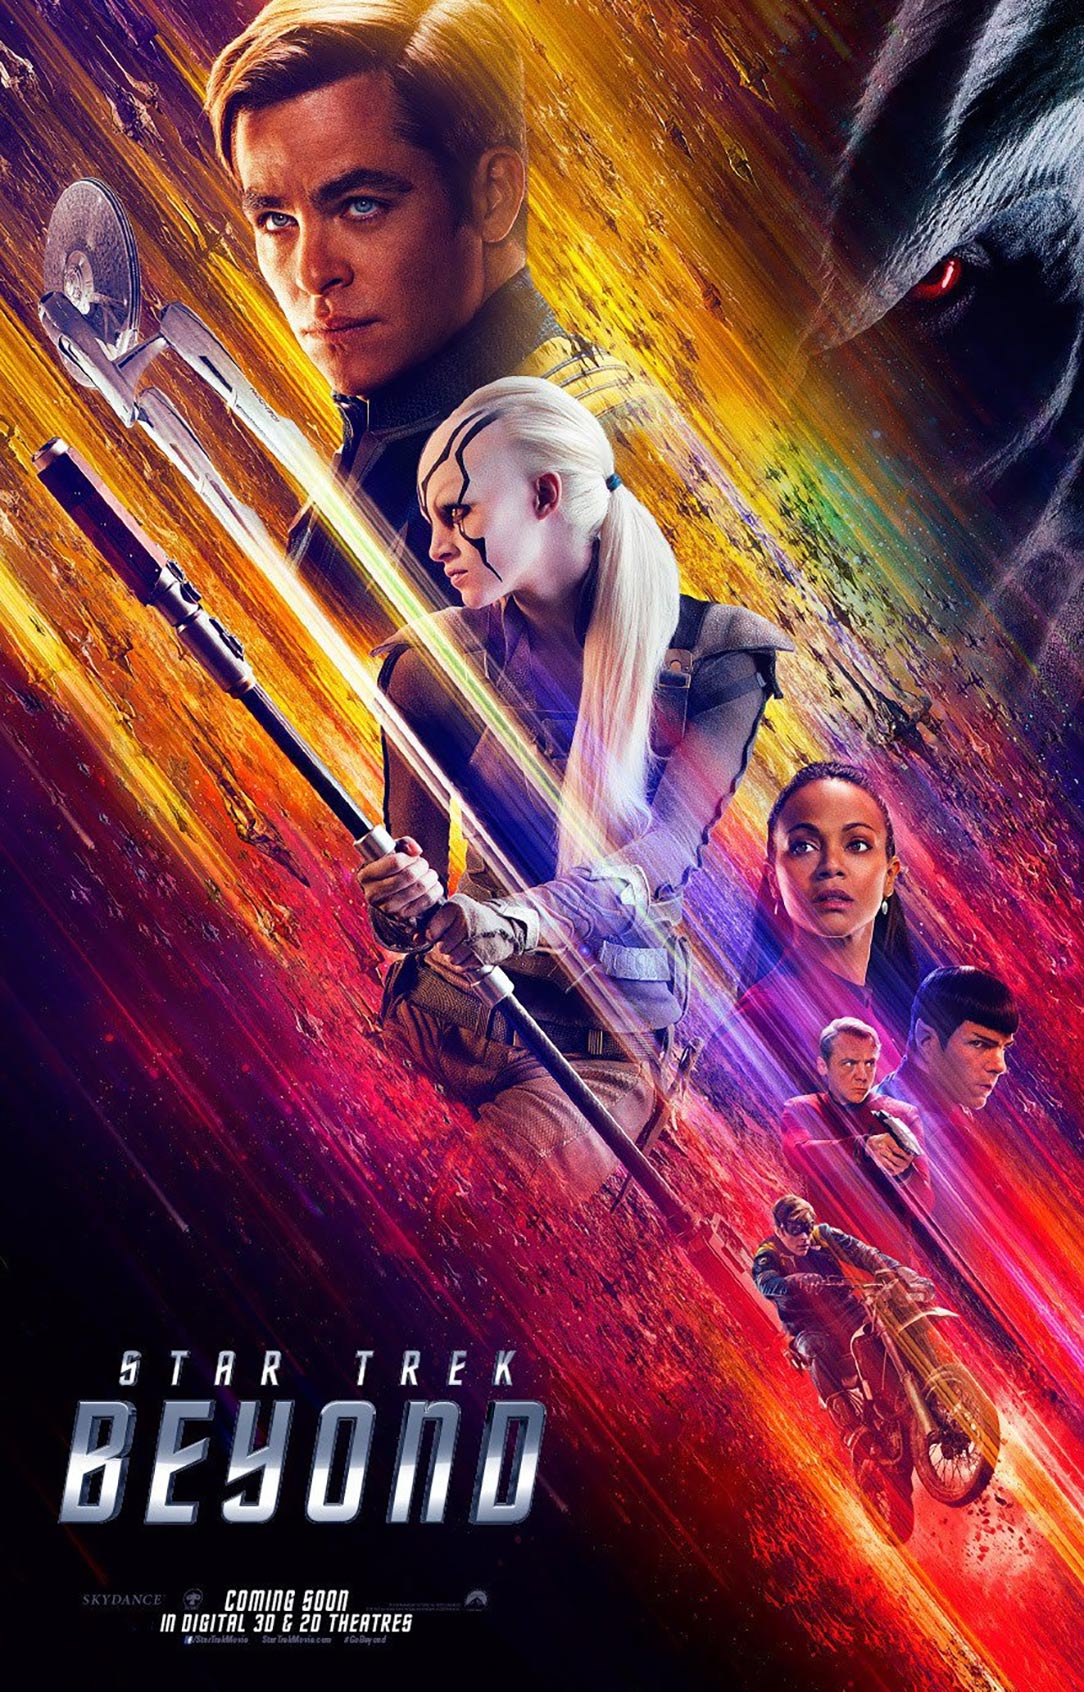 Star Trek 3 Beyond (2016) สตาร์เทรค 3 ข้ามขอบจักรวาล - ดูหนังออนไลน